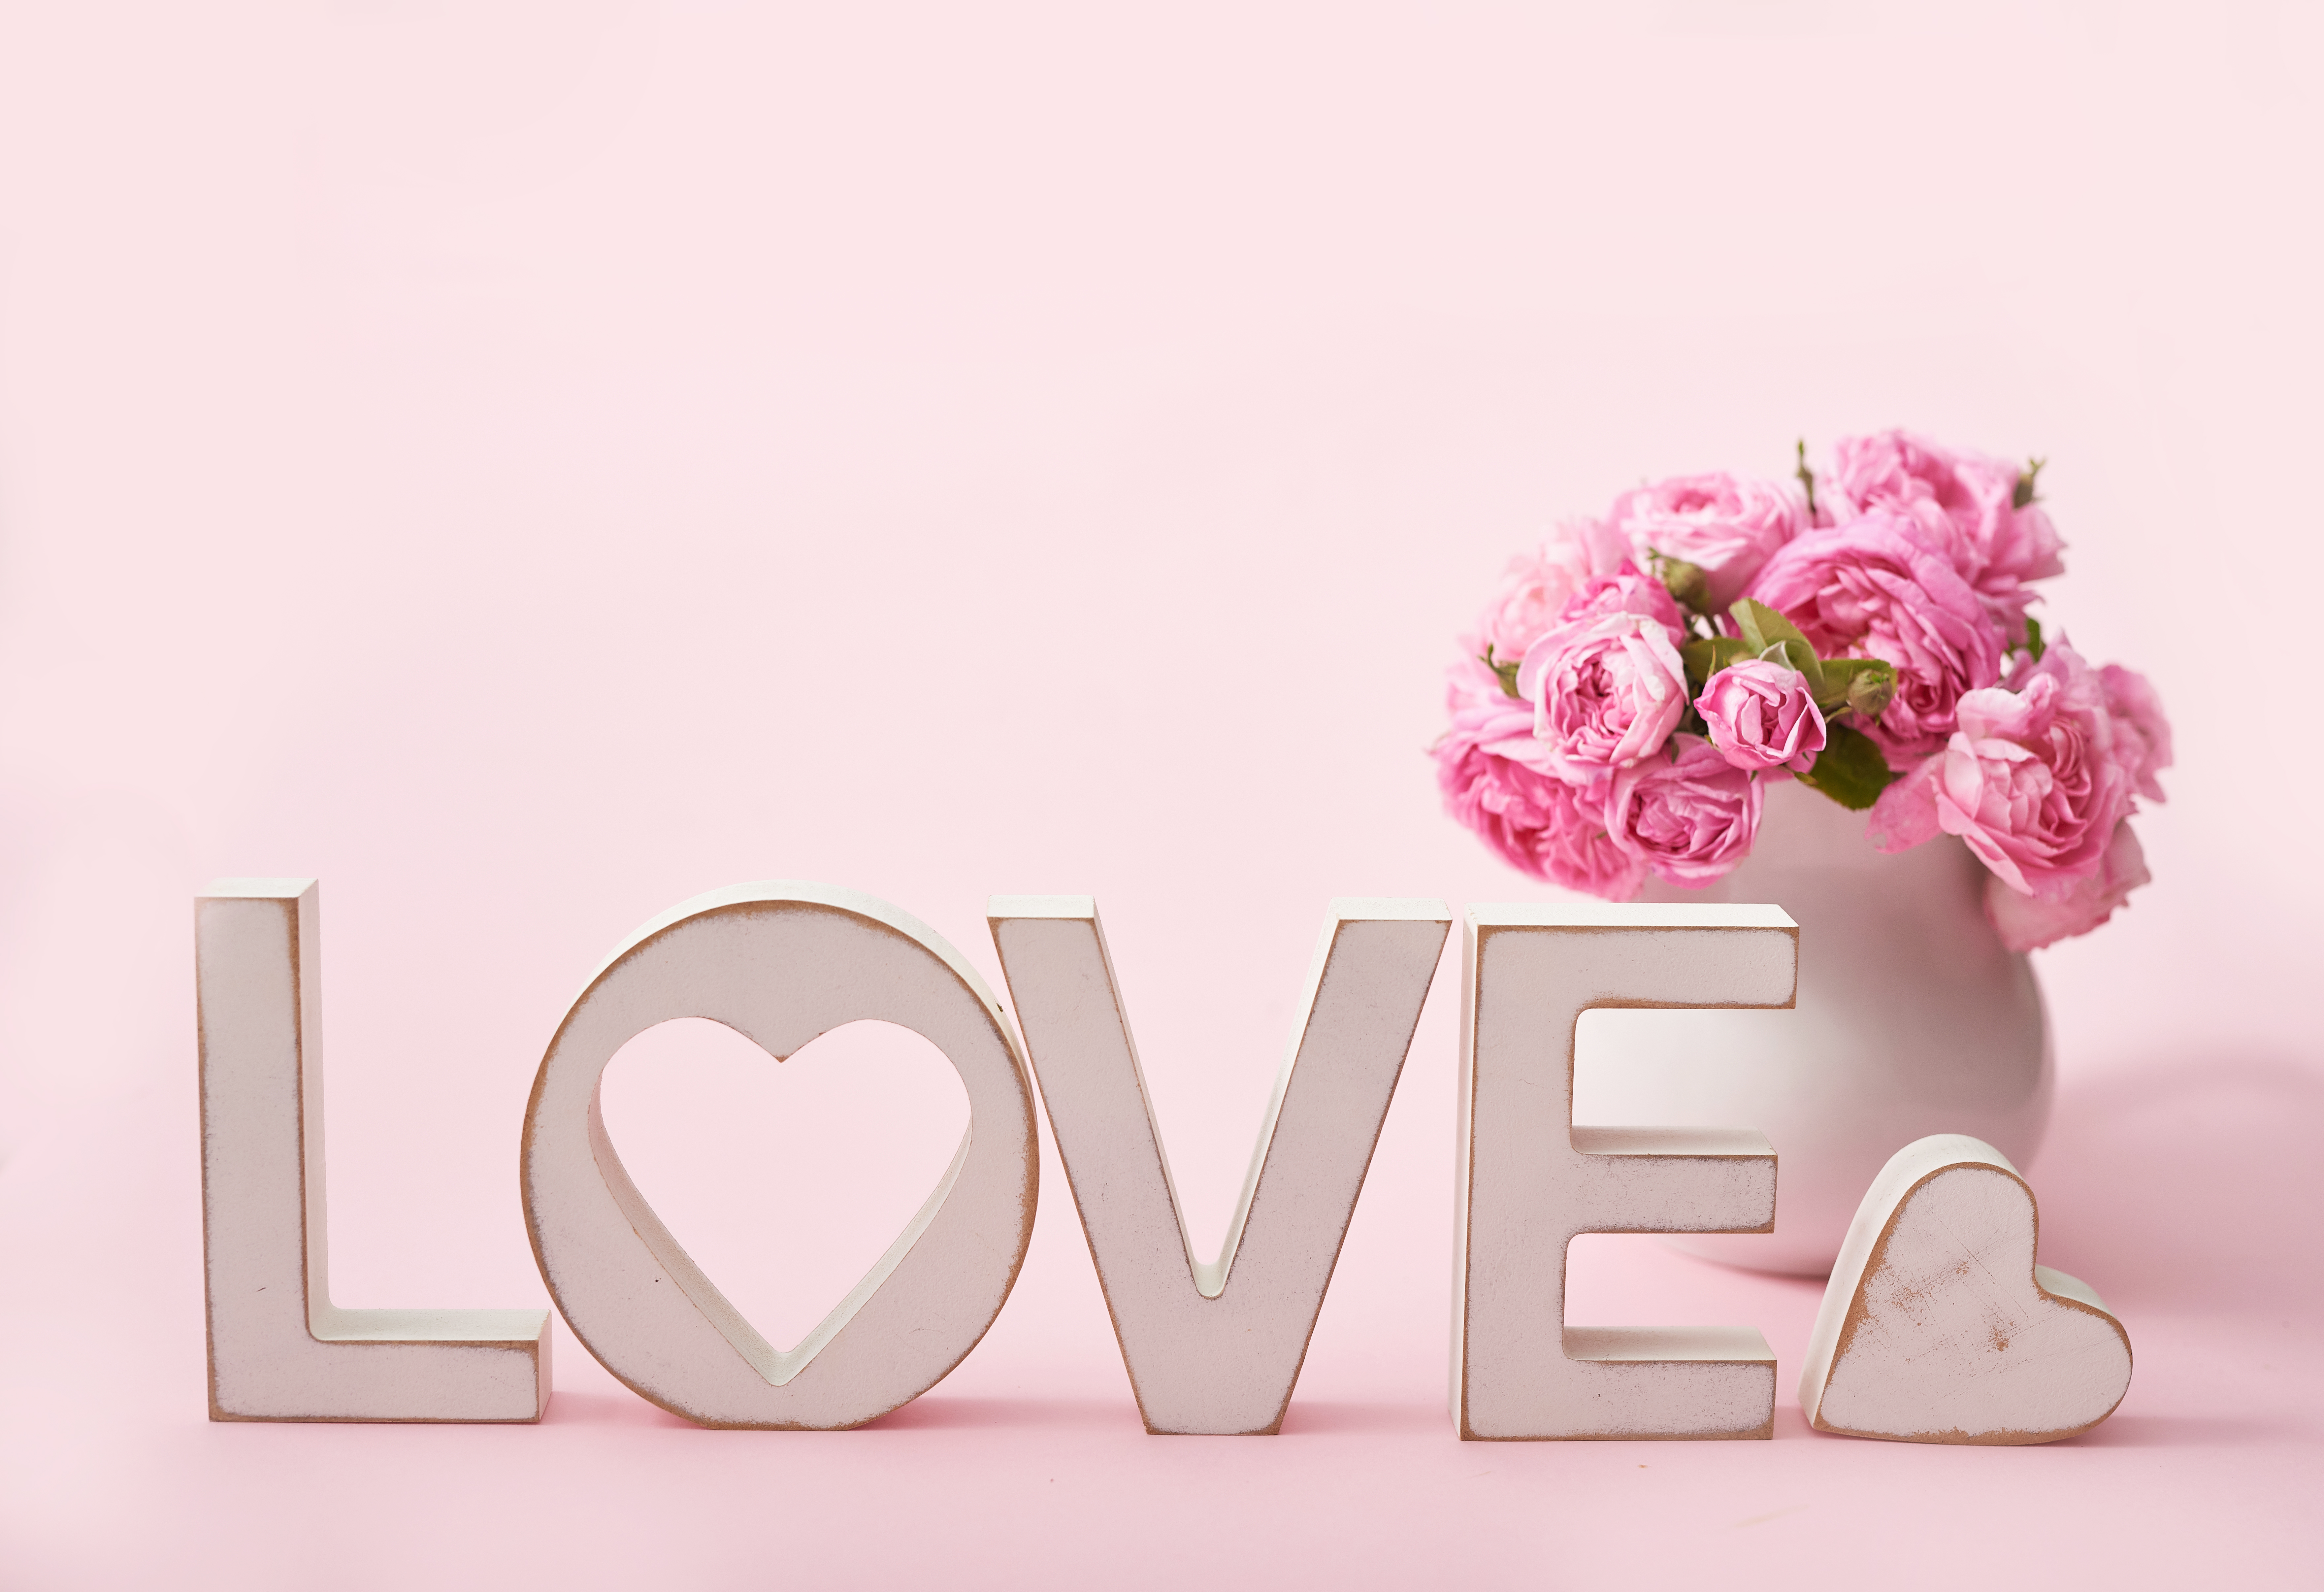 Й лове. Красивые обои любовь. "Цветы любви". Love картинки надписи. Красивая надпись на розовом.